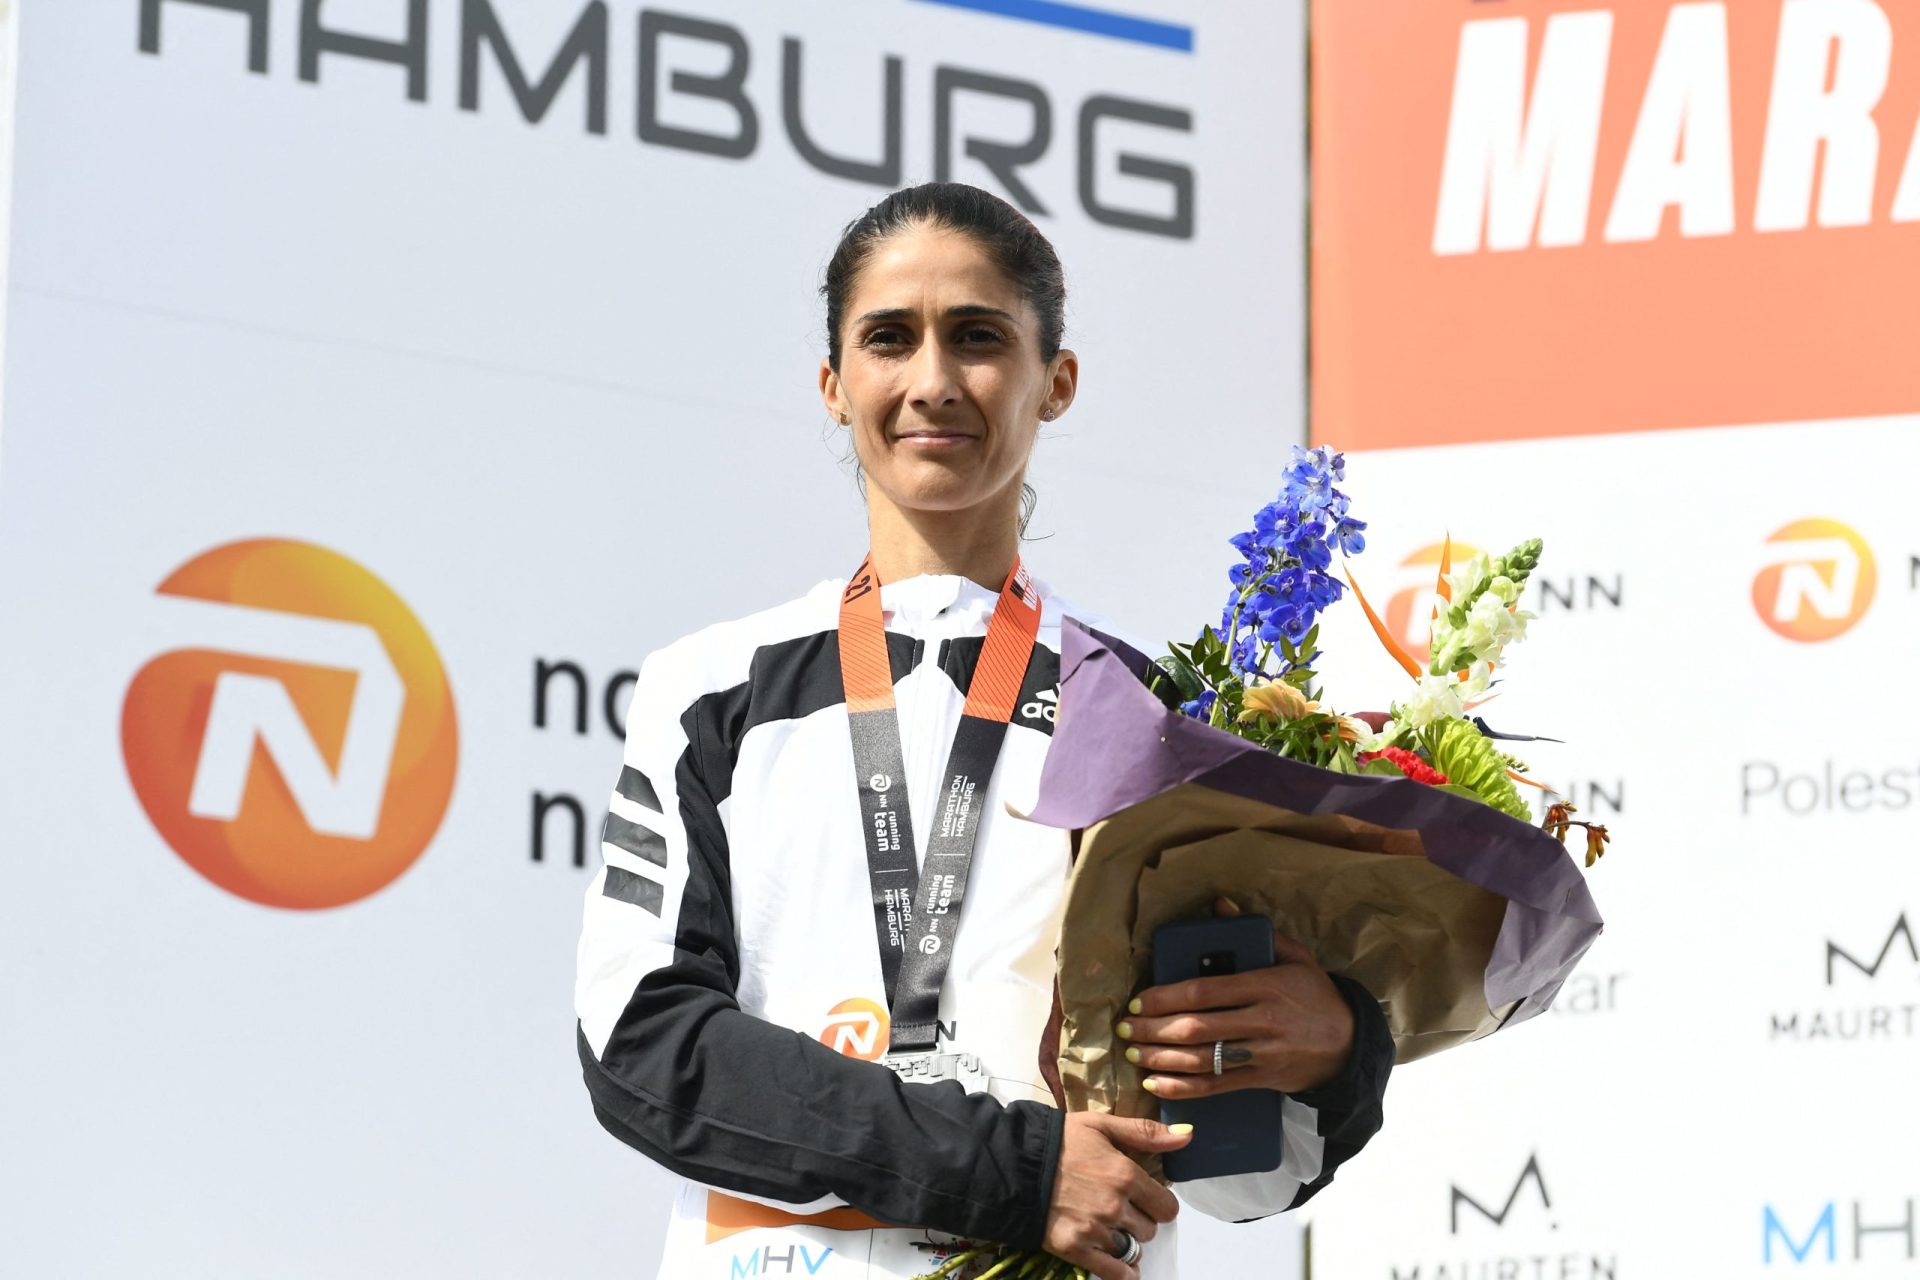 Tóquio2020: Segundo lugar em Twente dá qualificação olímpica a Sara Moreira